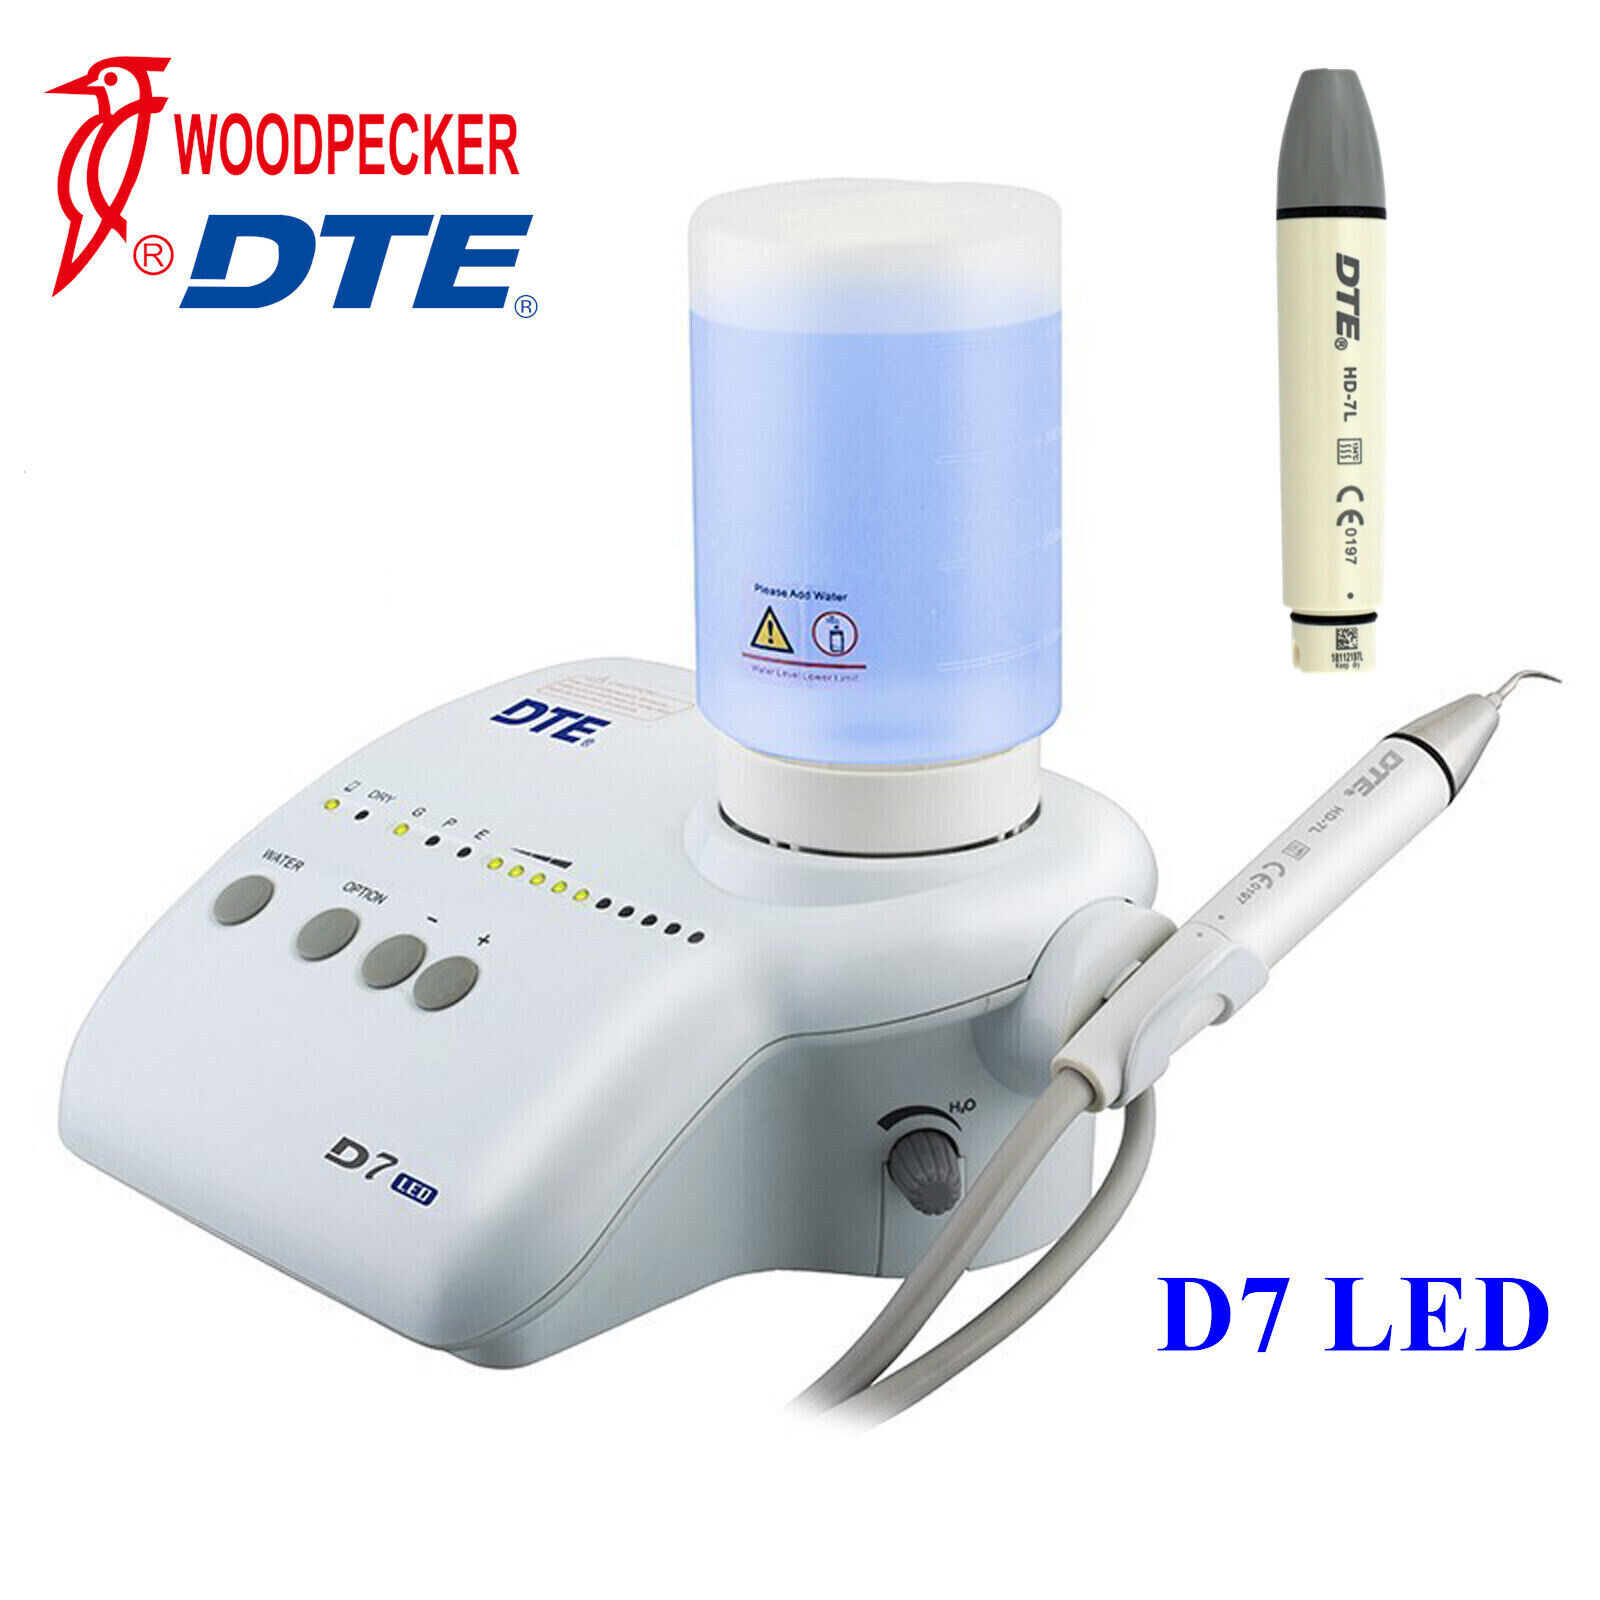 Woodpecker DTE D7 LED Dental Ultrasonic Scaler + 8pc Tips HD-7L Handpiece Bottle